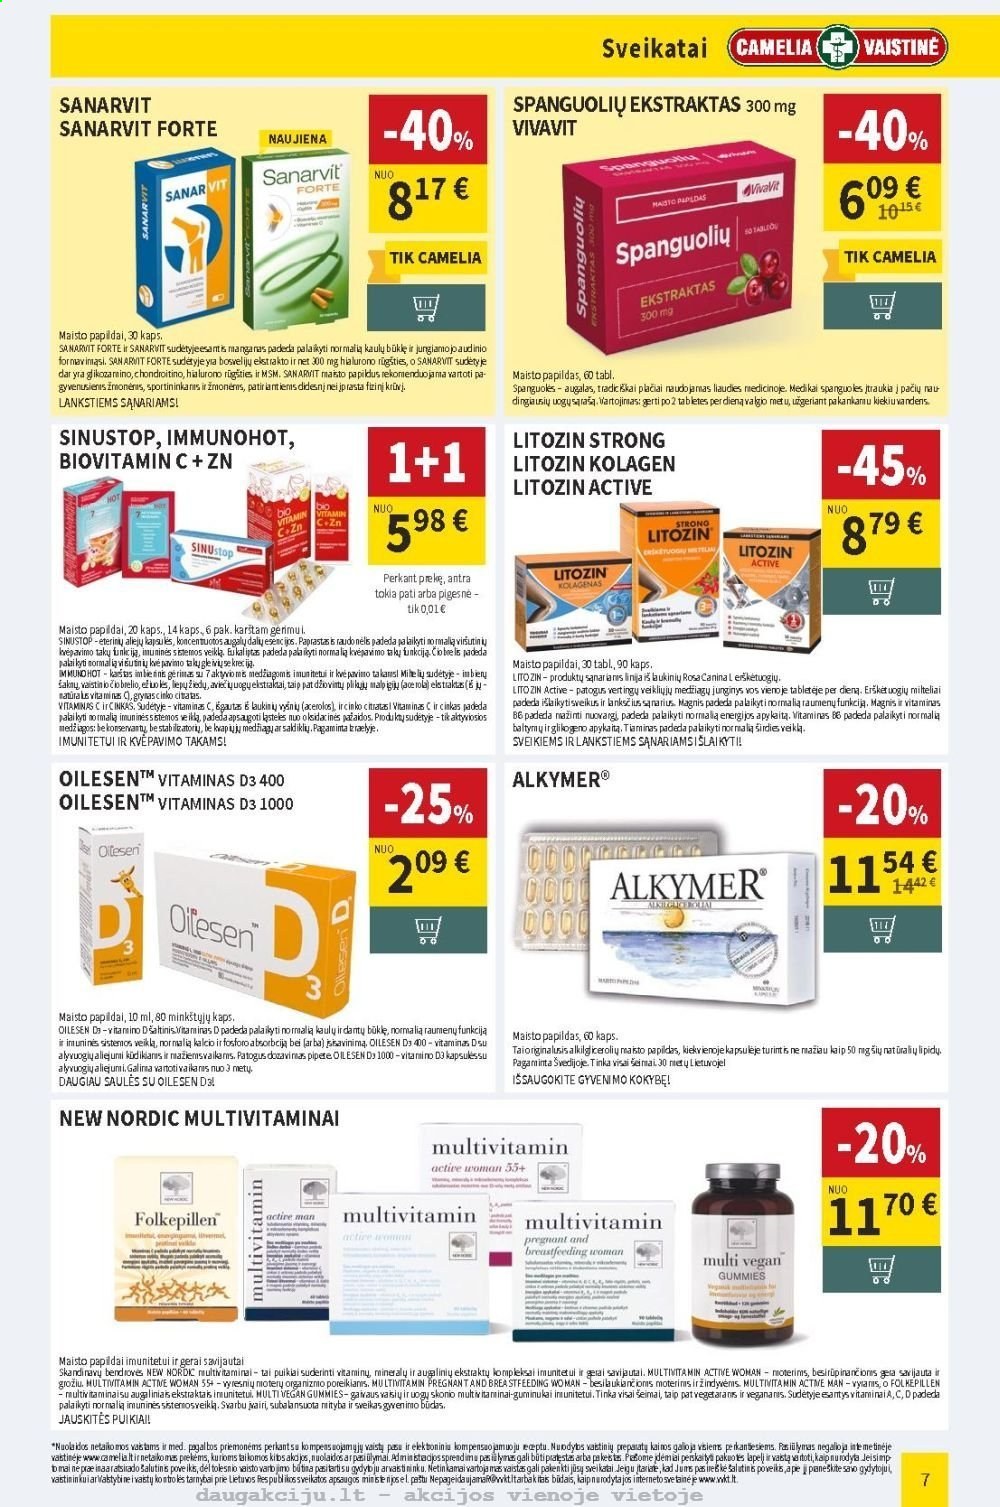 thumbnail - „CAMELIA Vaistinė“ leidinys - 2021 02 01 - 2021 02 28 - Išpardavimų produktai - New Nordic, Alkymer, LitoZin, Magnis, maisto papildai, Zn, vitamin c, vitamin d3. 7 puslapis.